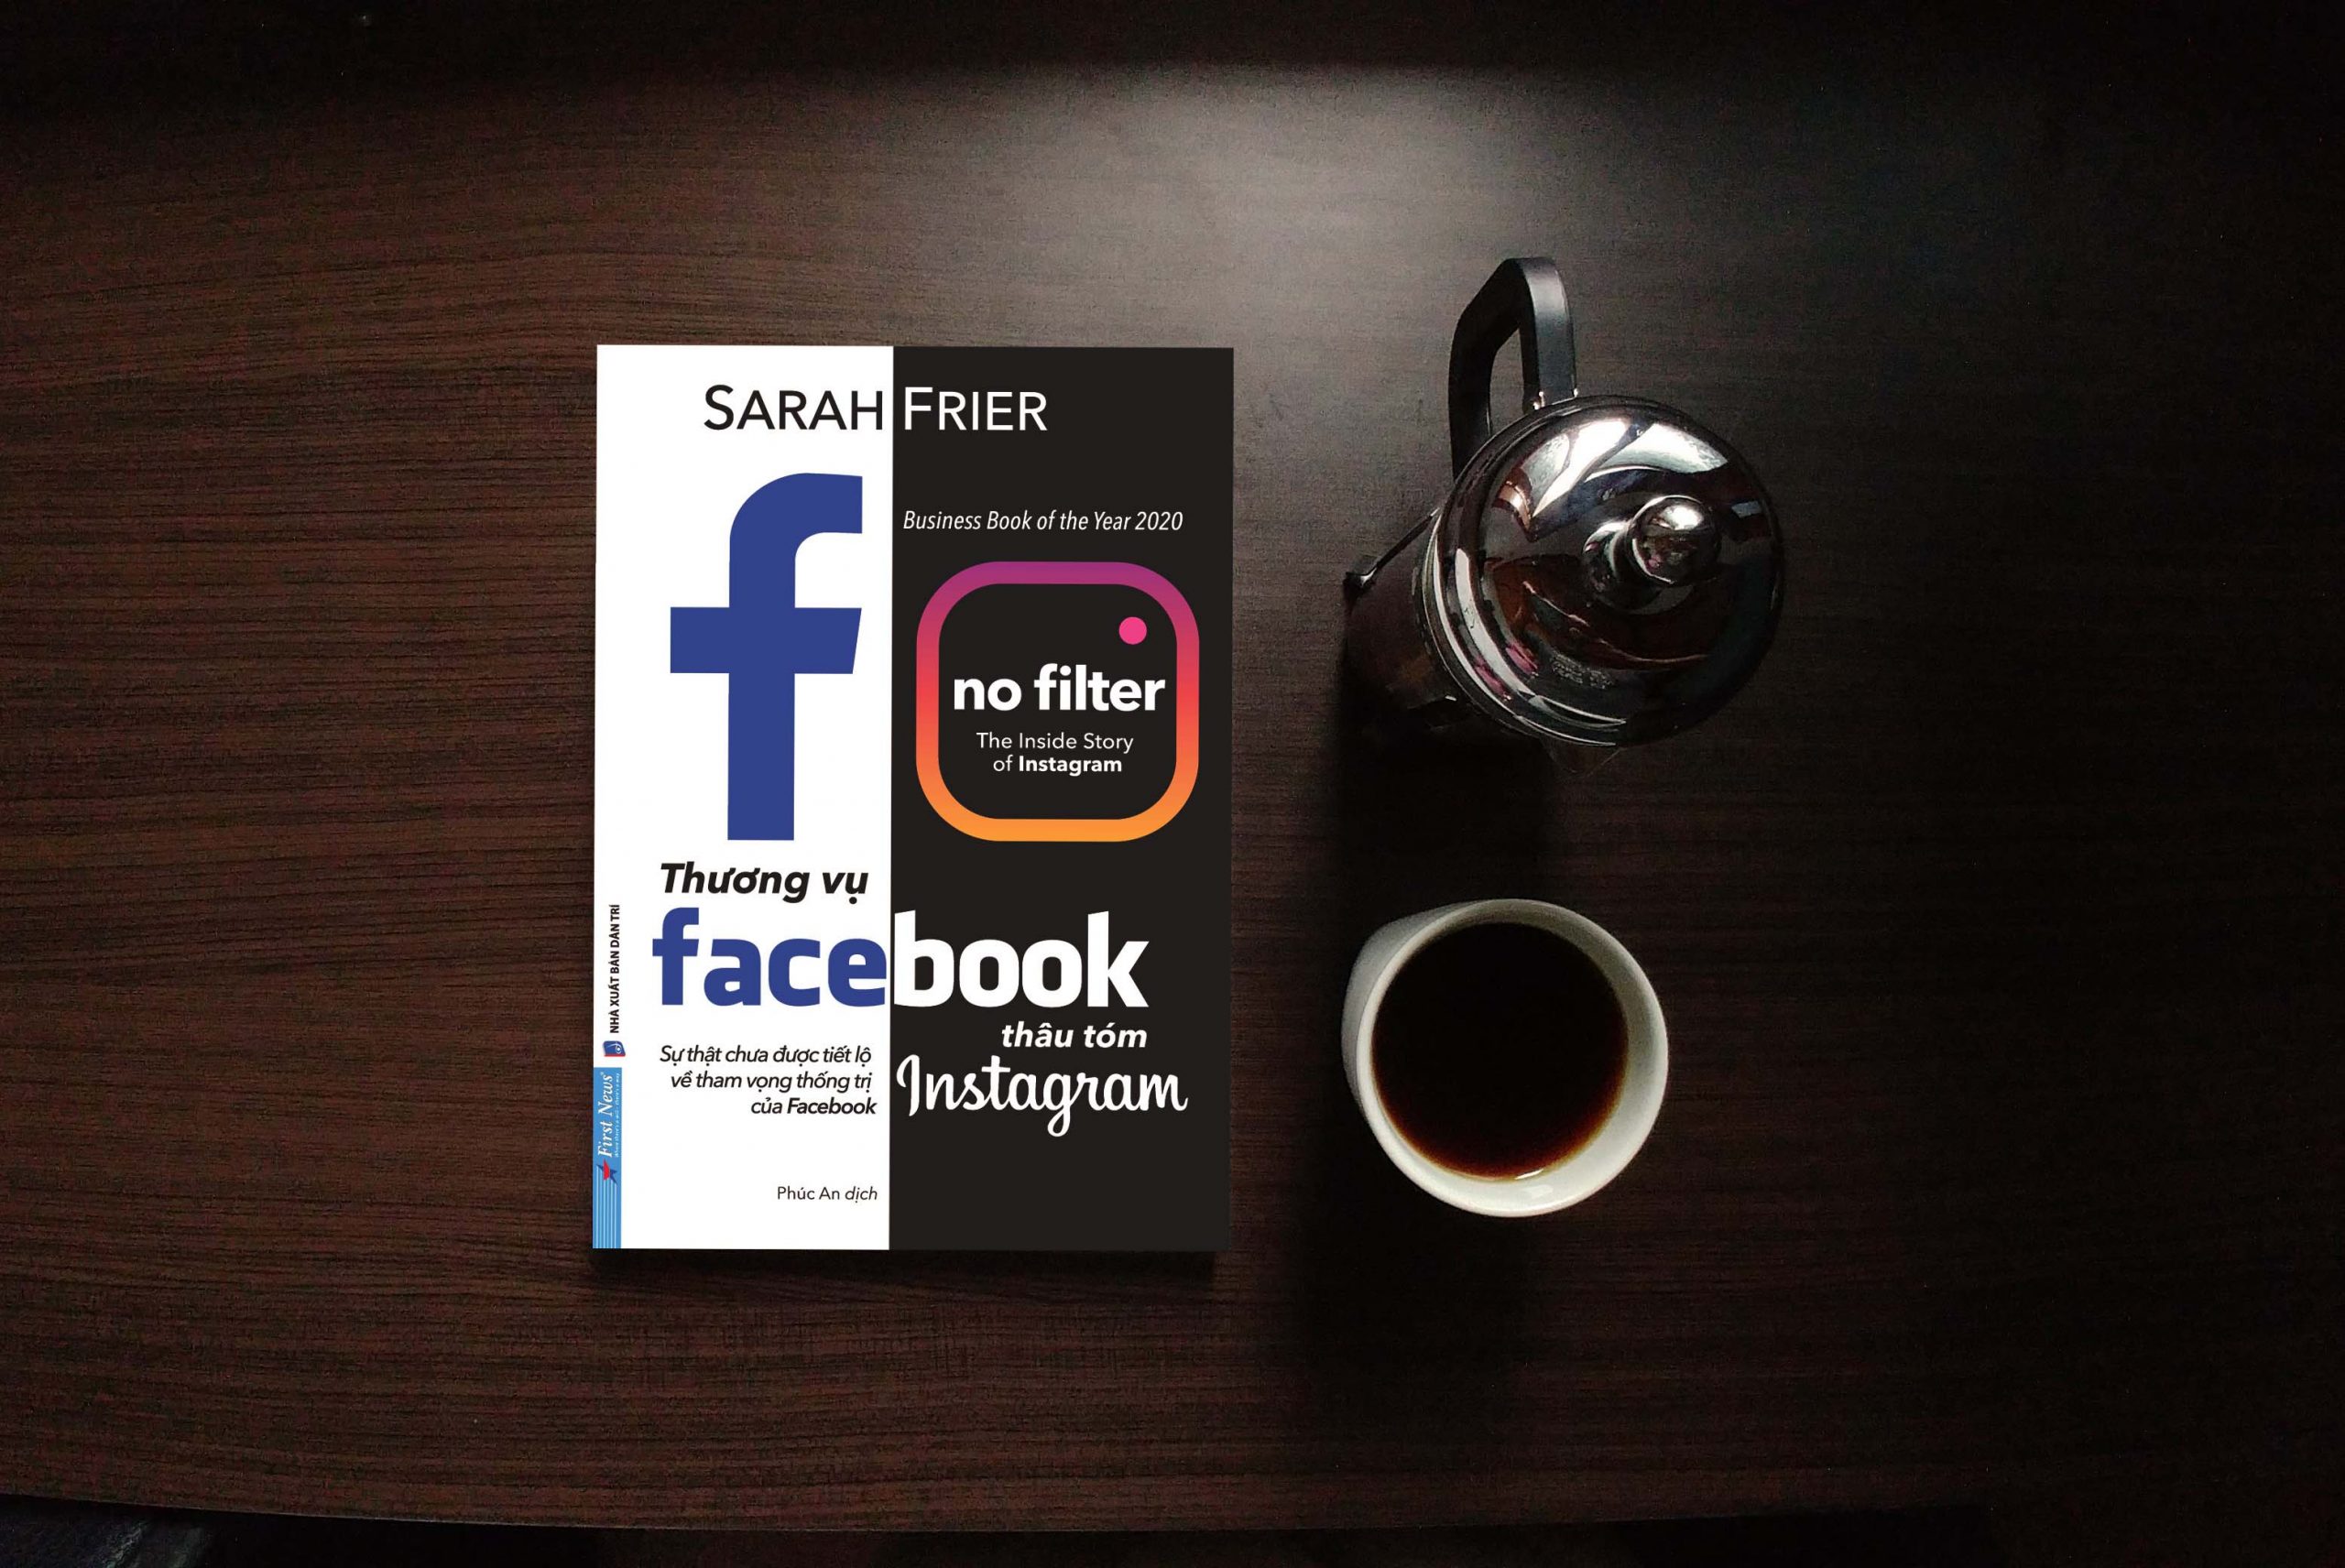 sách hay thương vụ Facebook thâu tóm Instagram